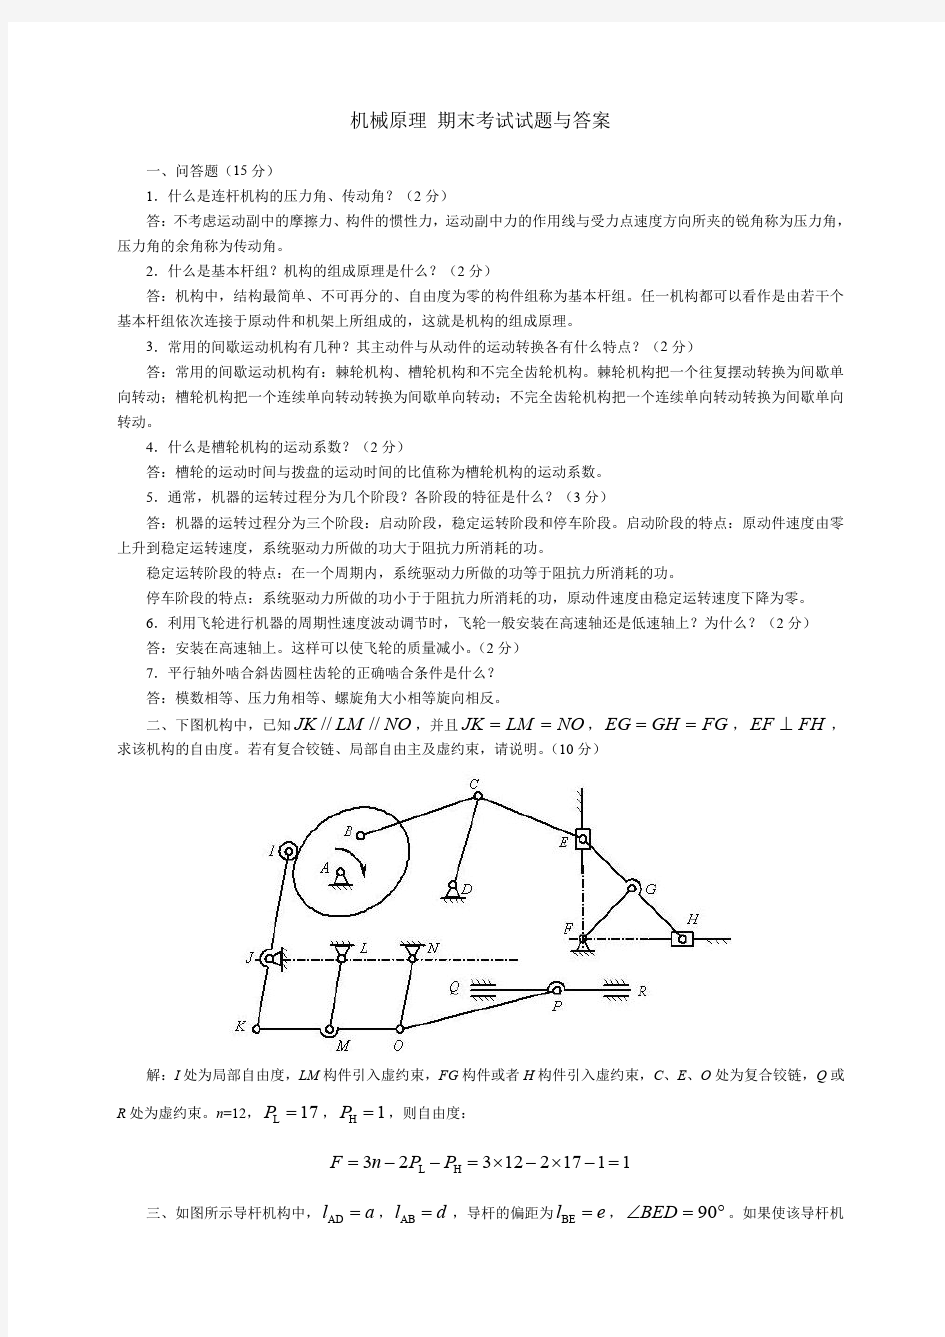 哈尔滨工业大学《机械原理》期末考试试题与答案 